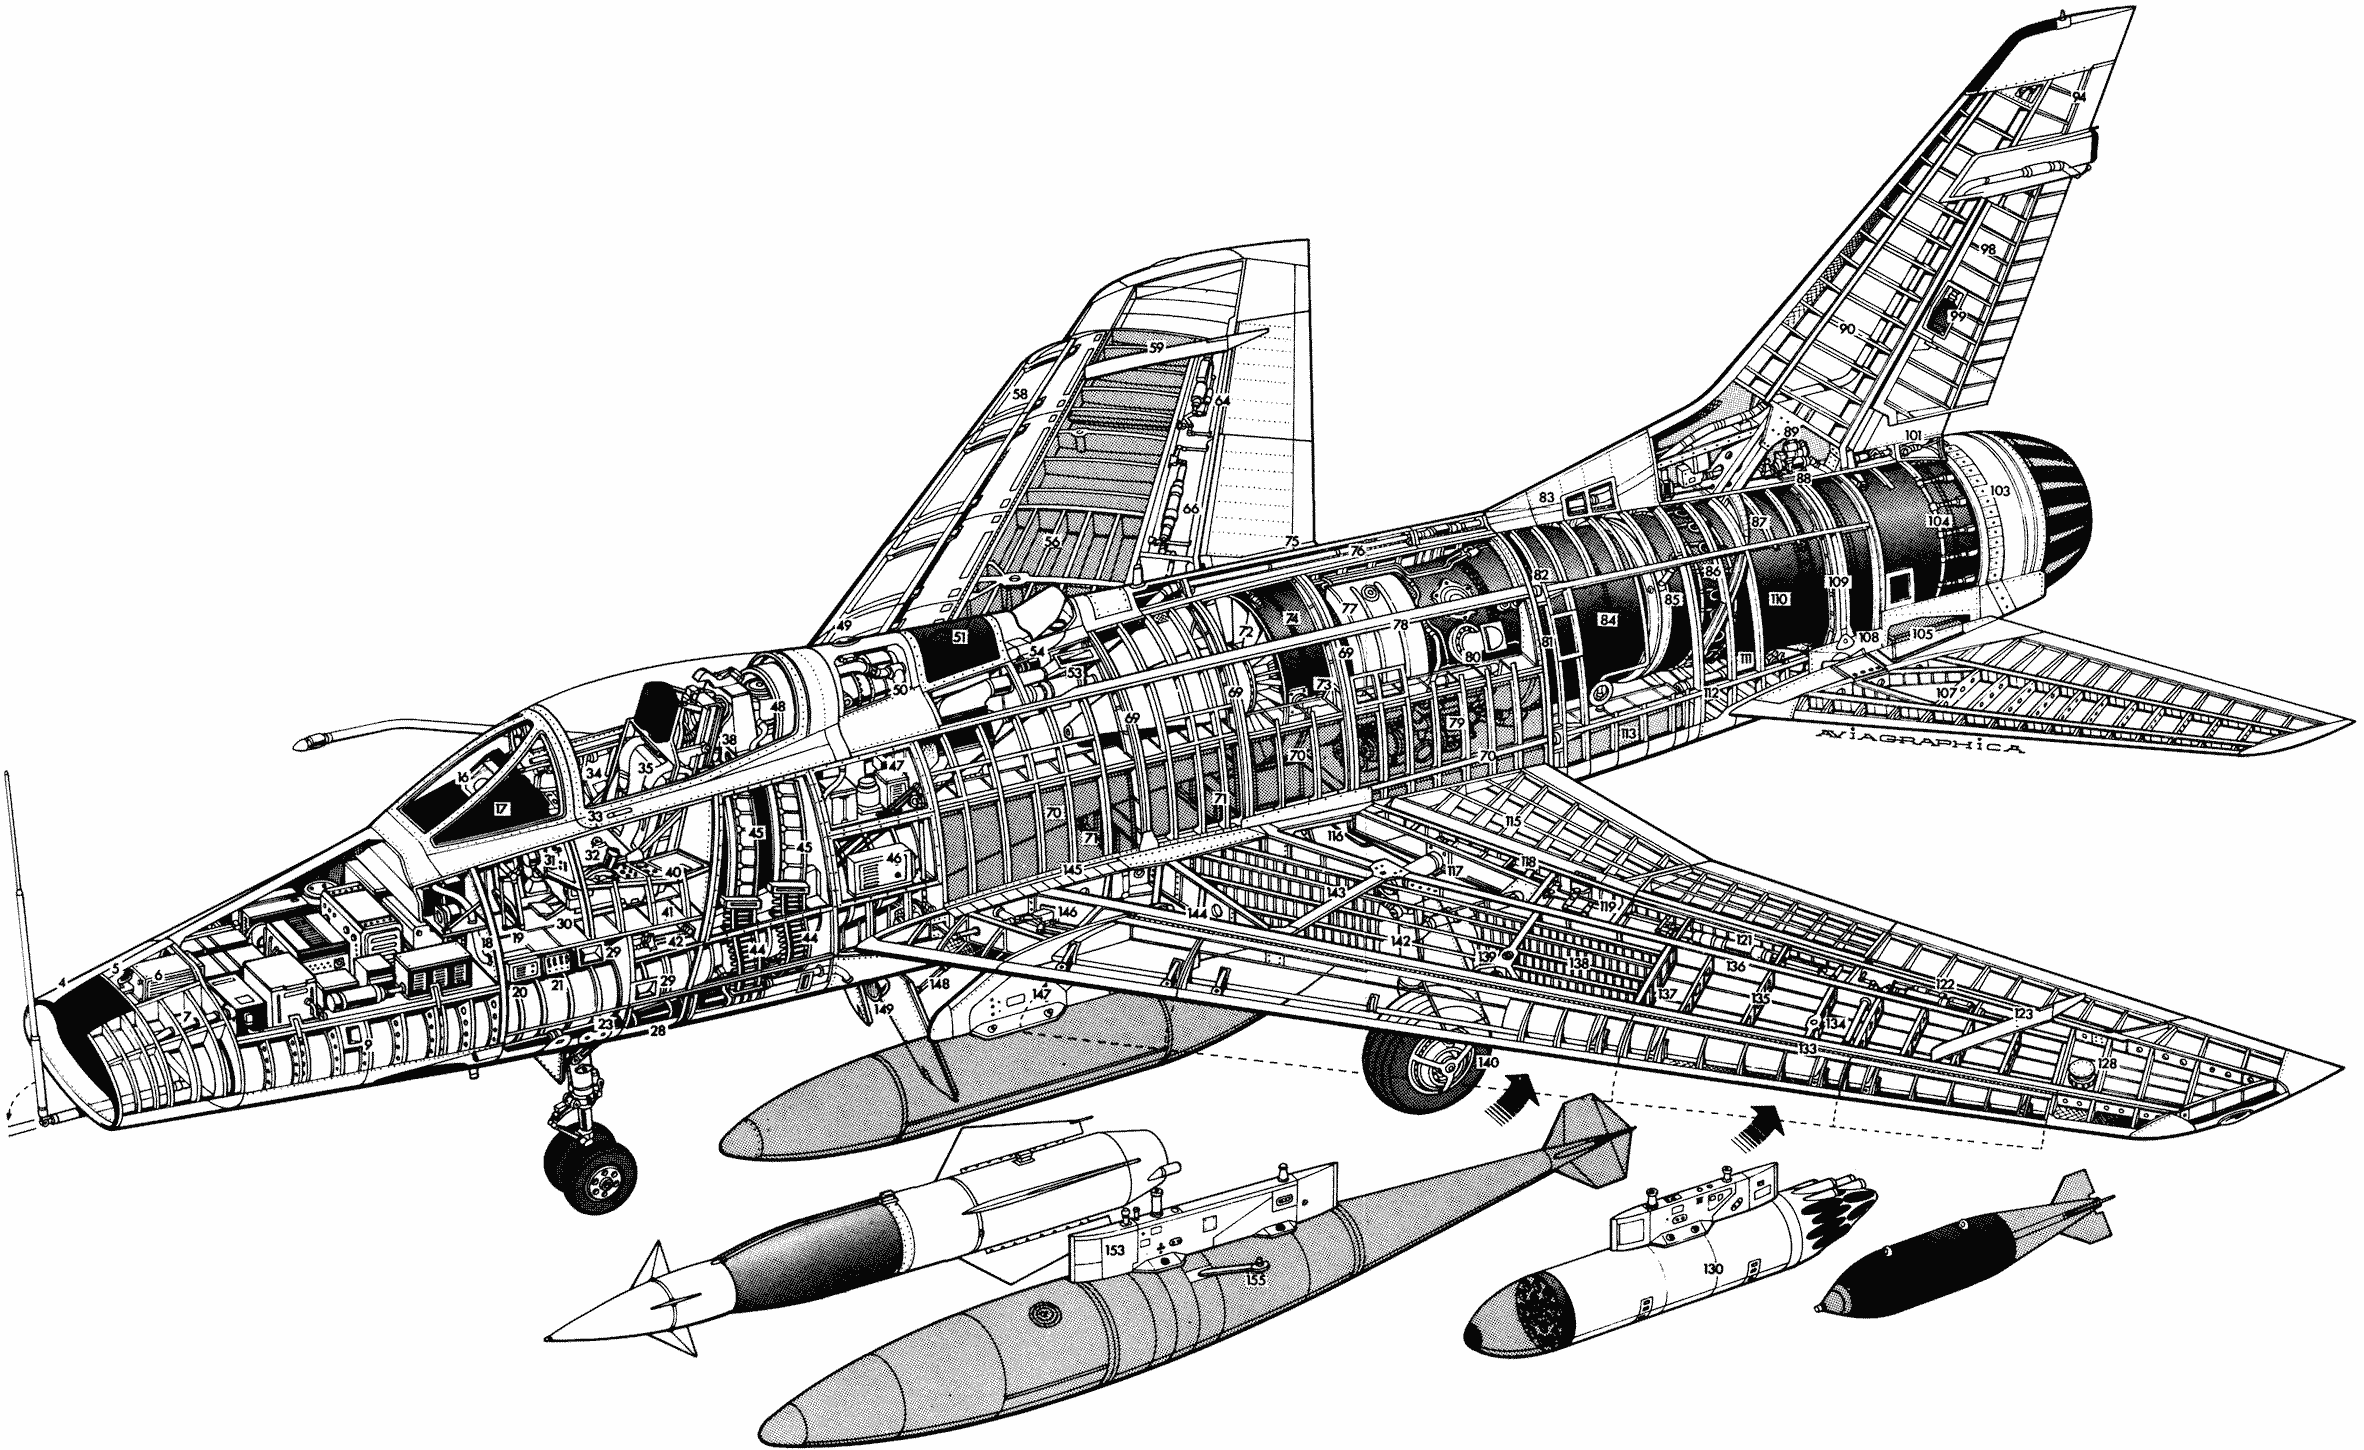 F-100 Super Sabre cutaway